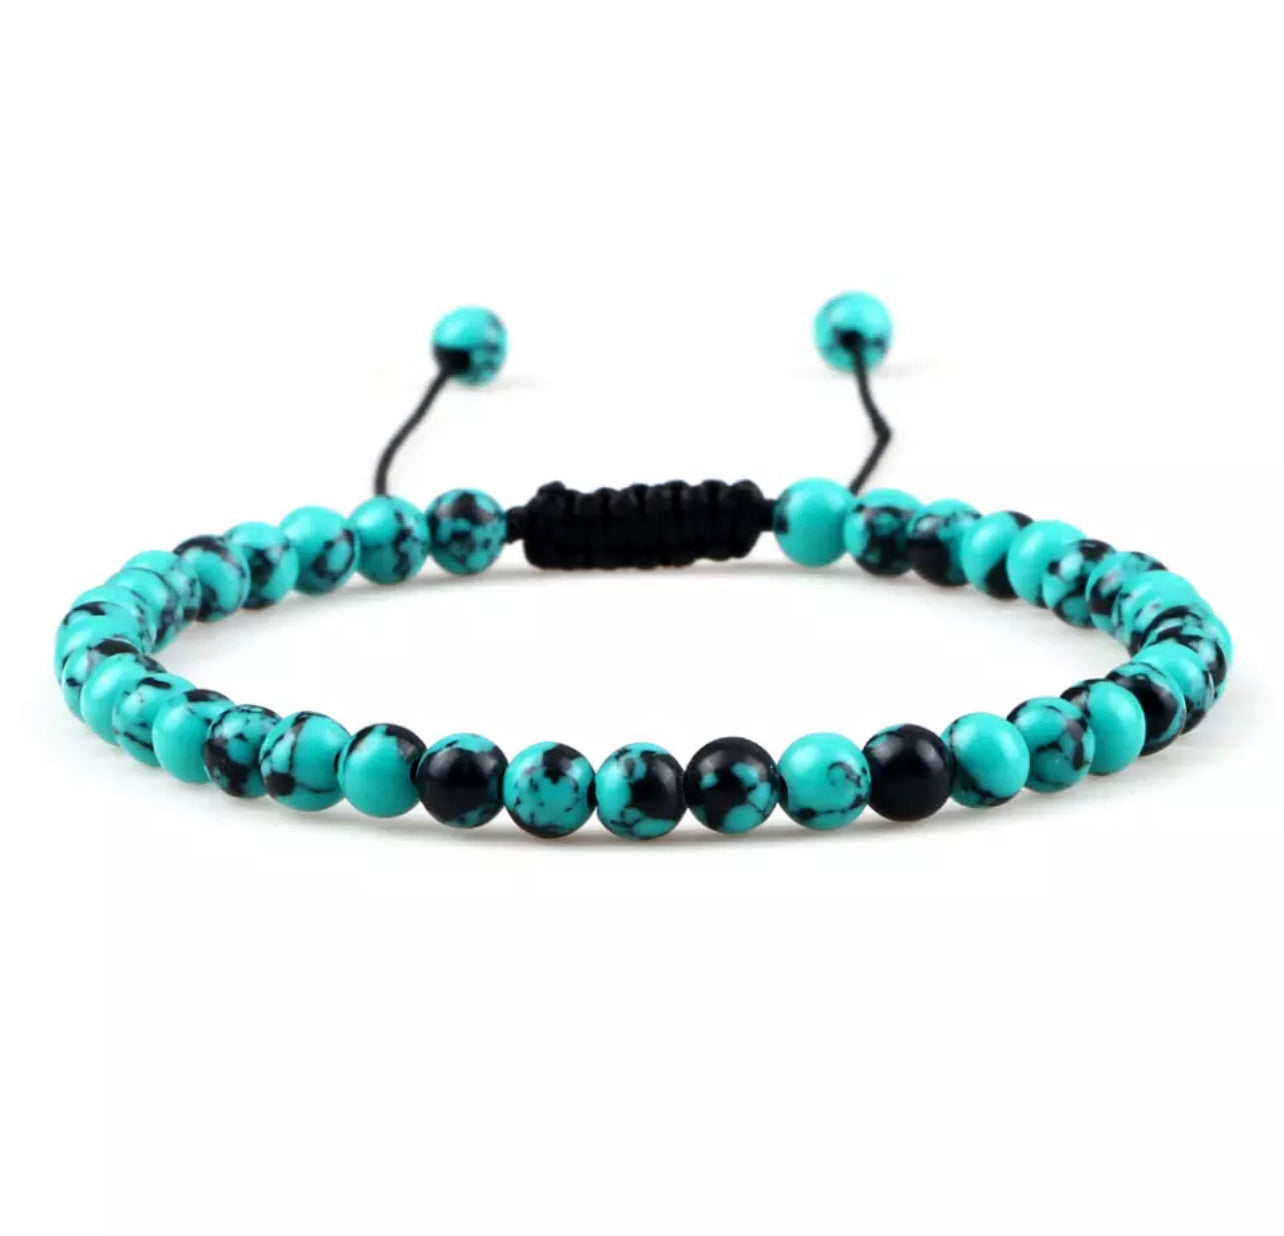 Turquoise Ball Bracelet